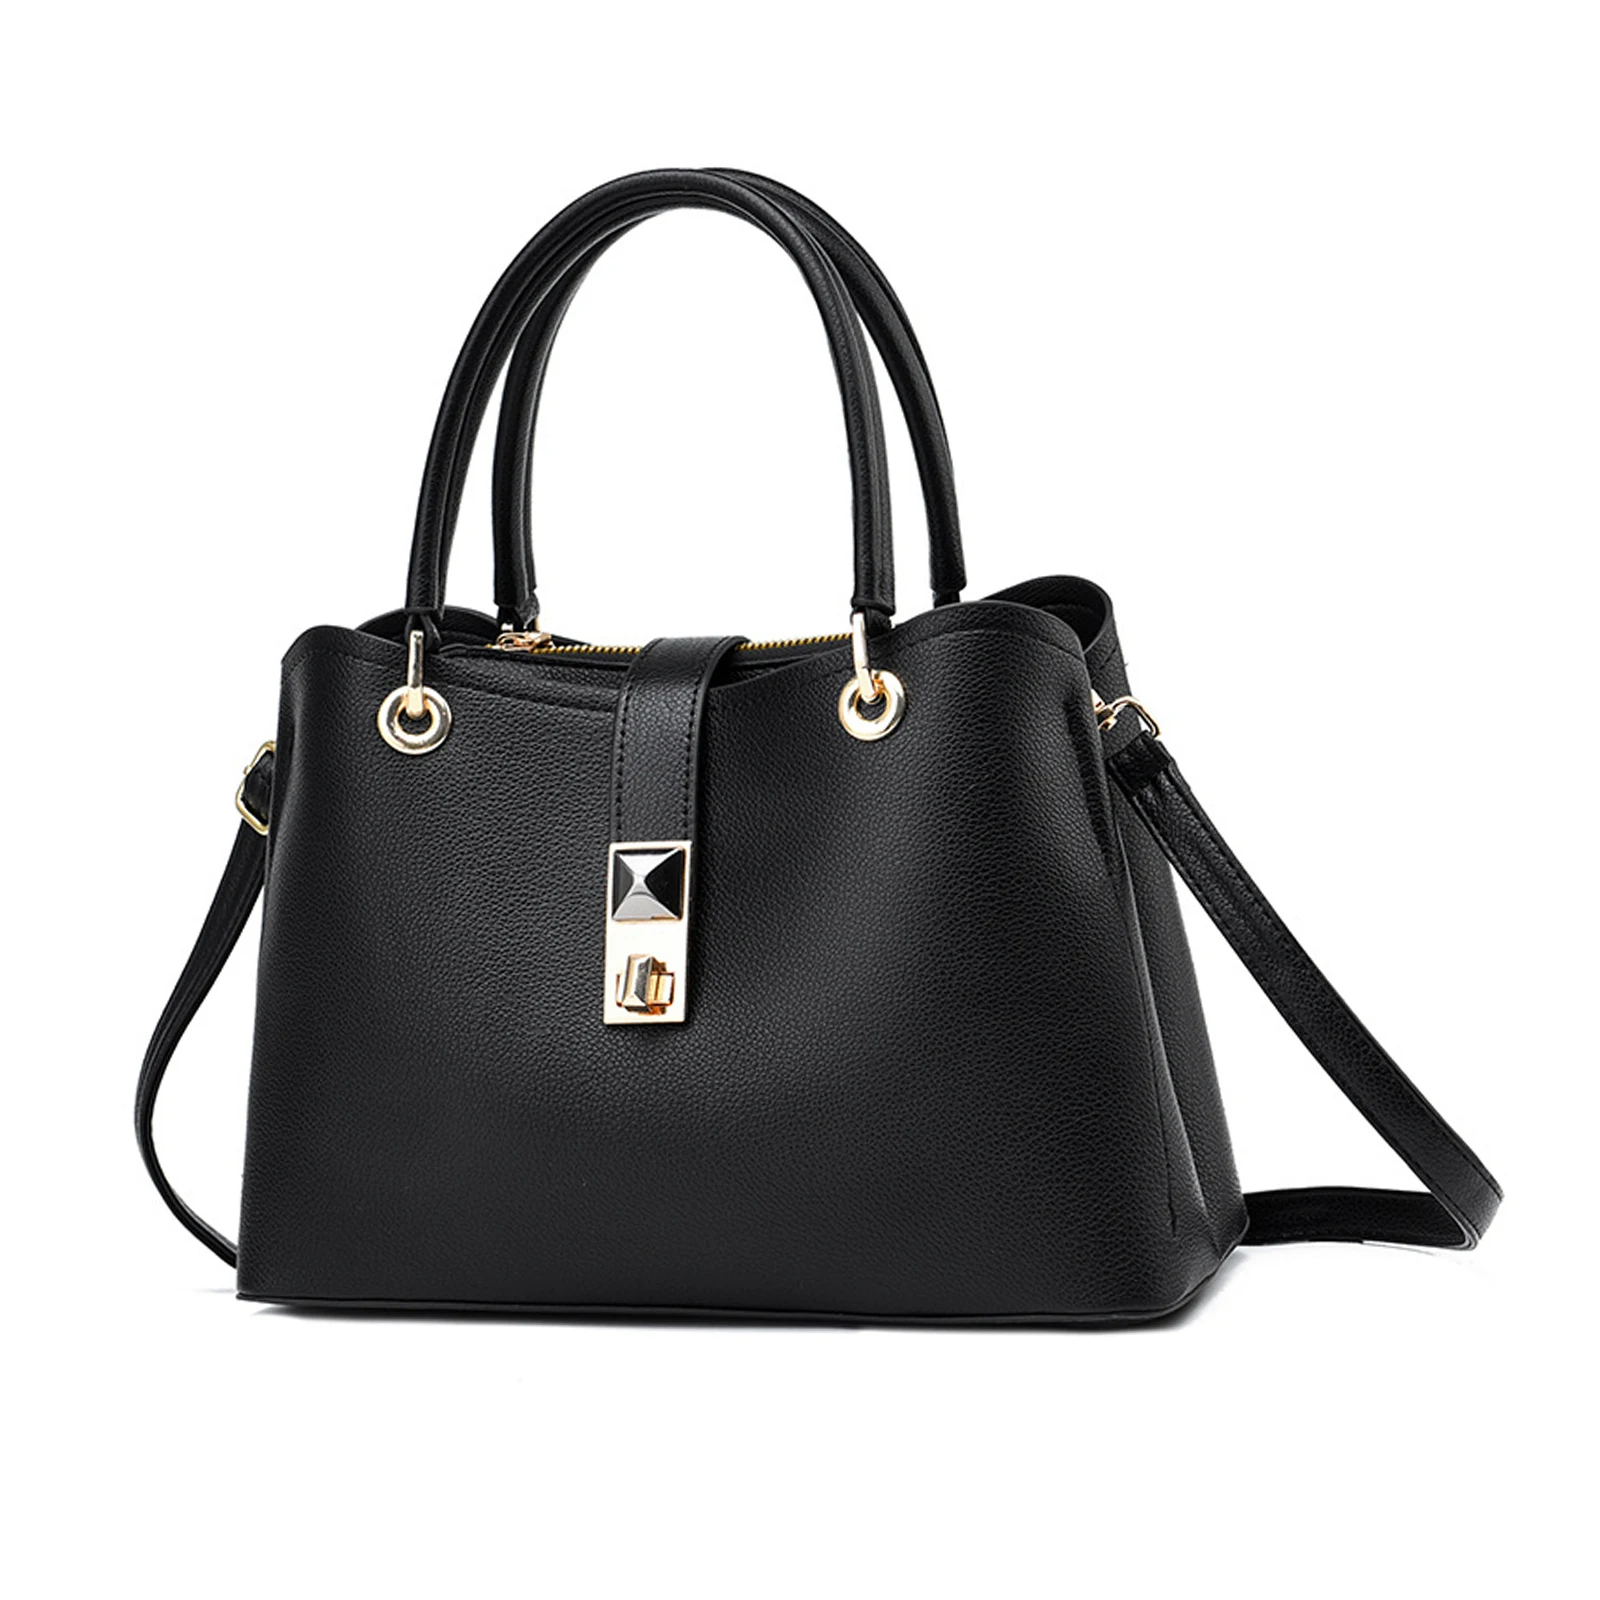 

NICOLE & DORIS Ladies Handbags Small Top Handle Bags Crossbody Bag Phone Bag PU Leather Shoulder Bag with Lock Closure Women Han